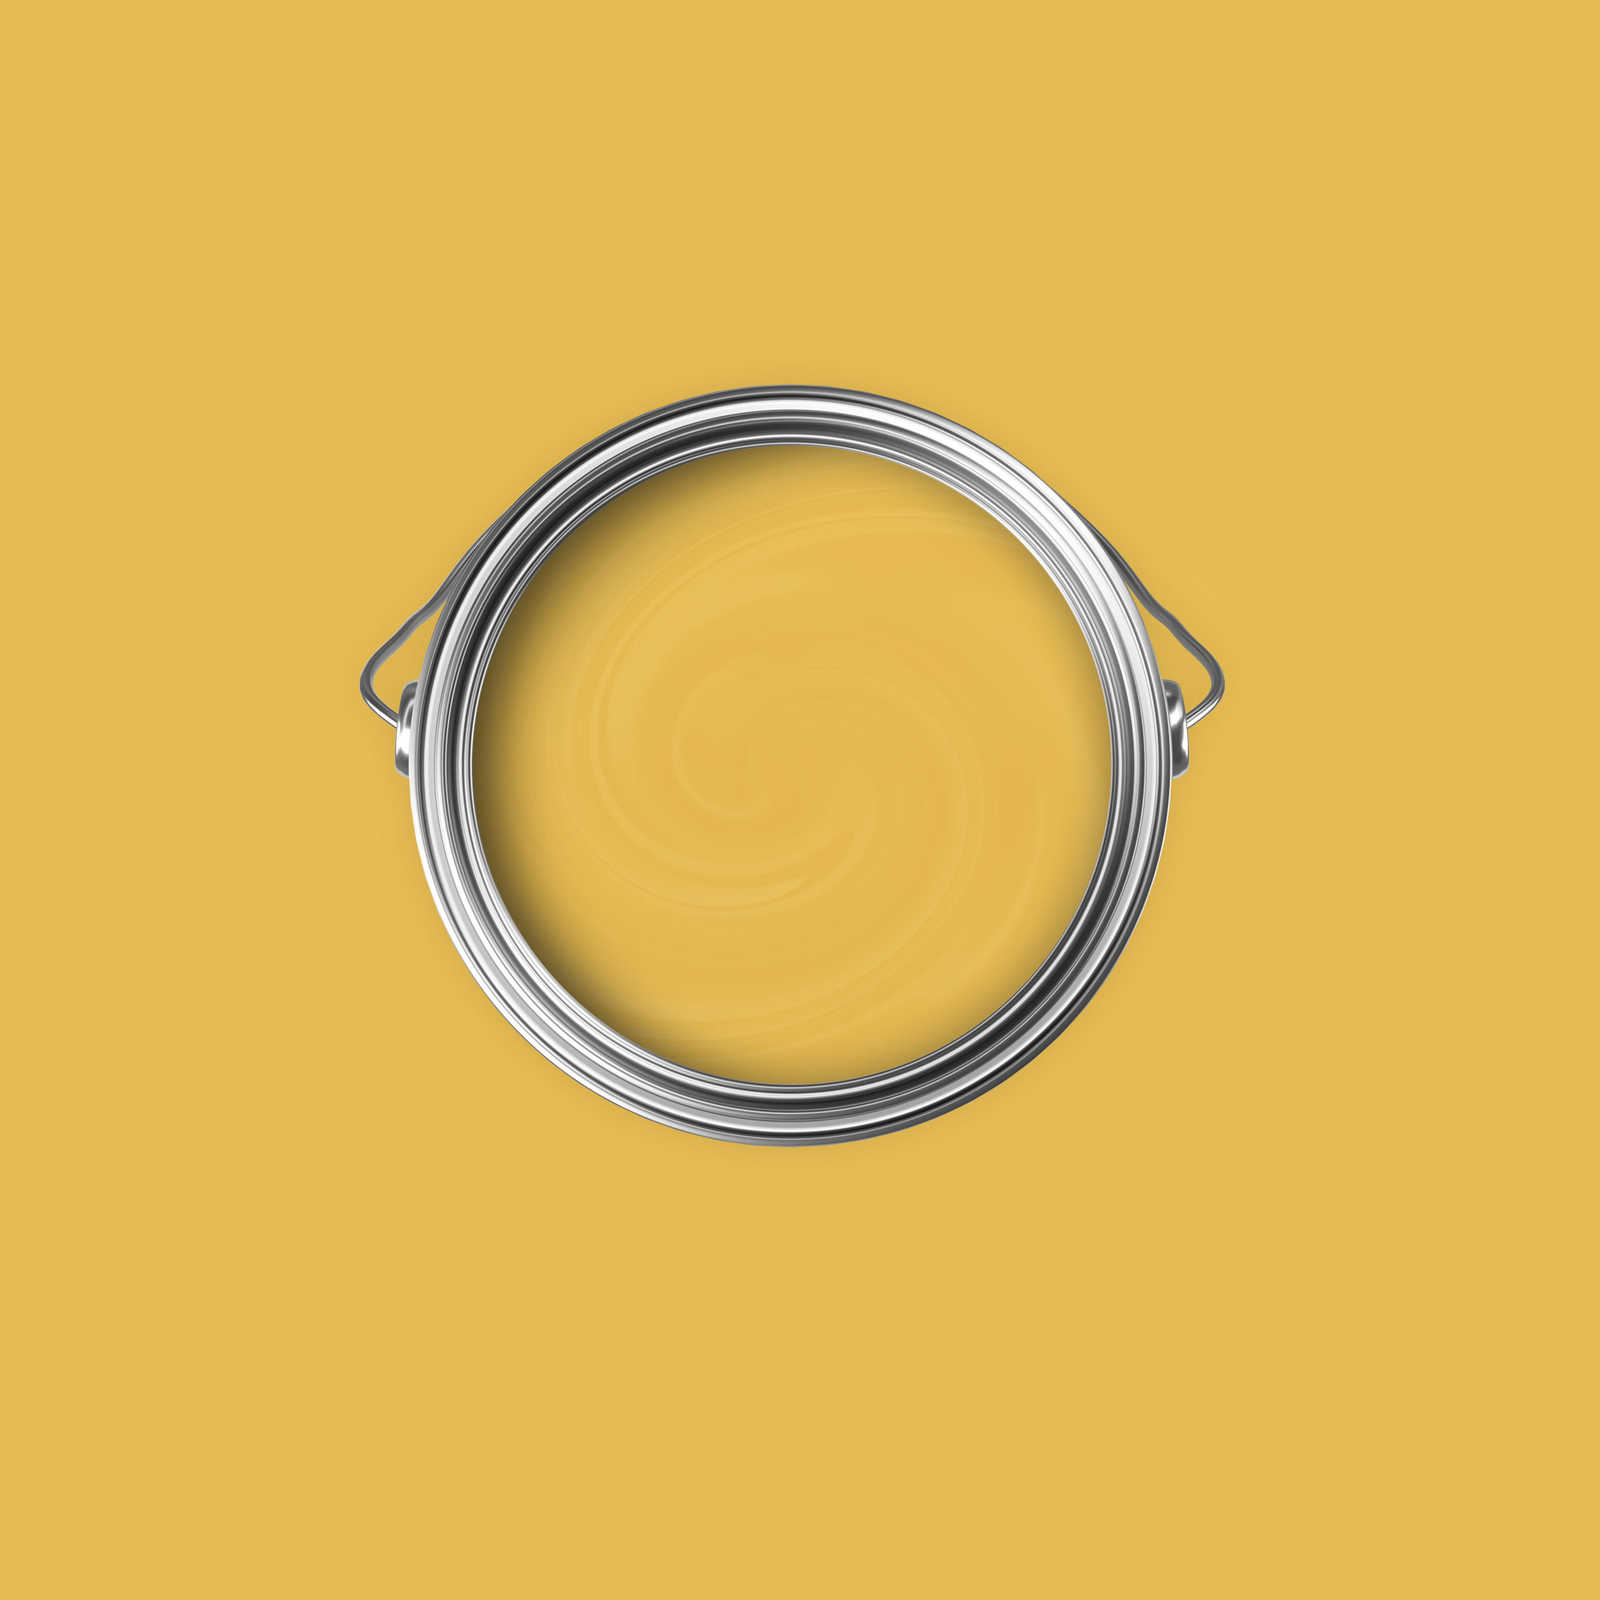             Premium Muurverf Radiant Mustard Yellow »Juicy Yellow« NW802 – 2,5 liter
        